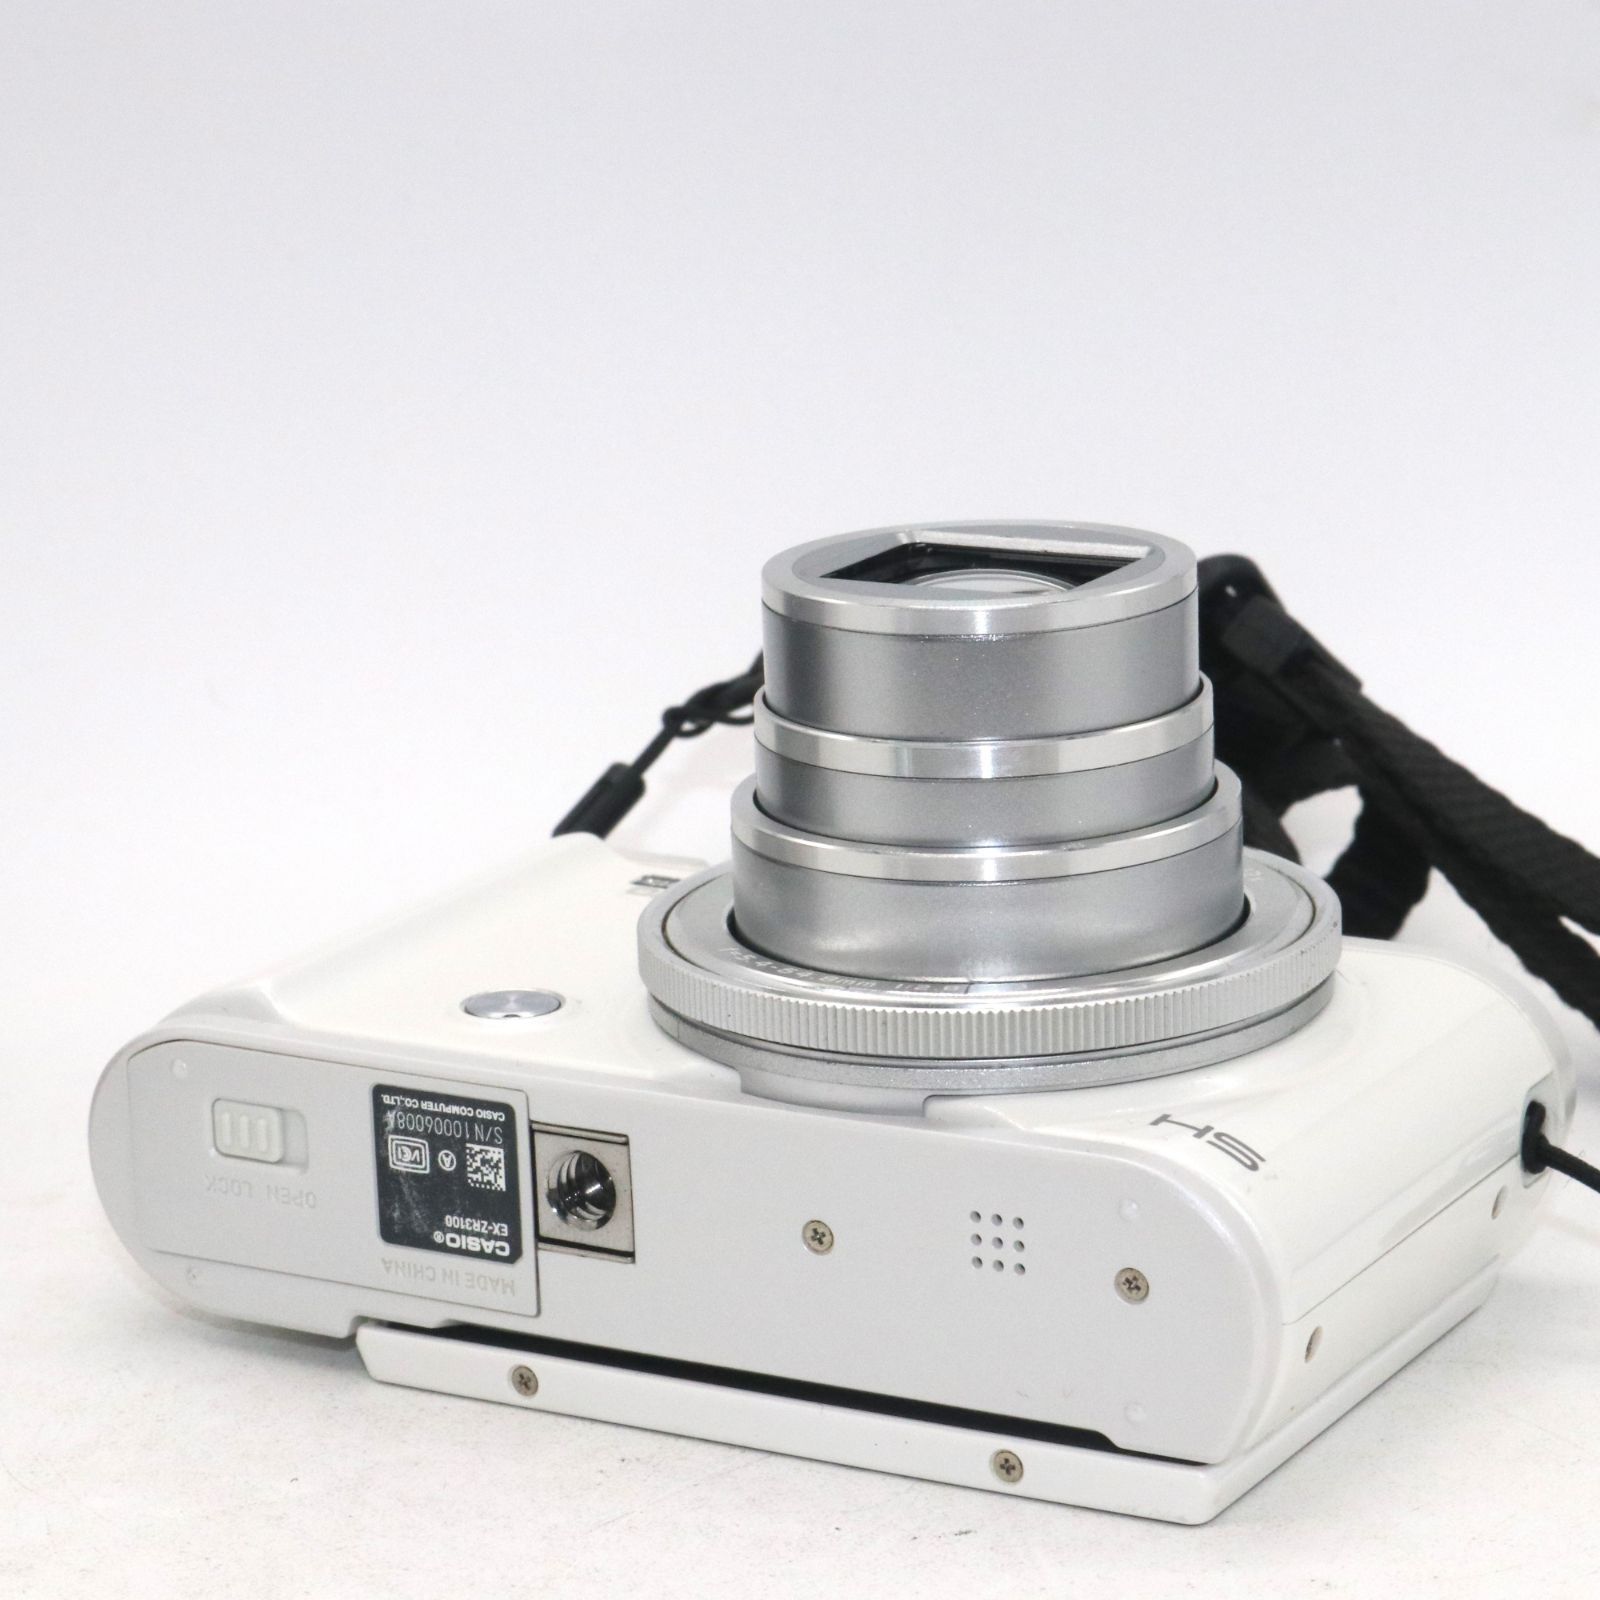 良品 CASIO デジタルカメラ EXILIM EX-ZR3100WE 自分撮りチルト液晶 